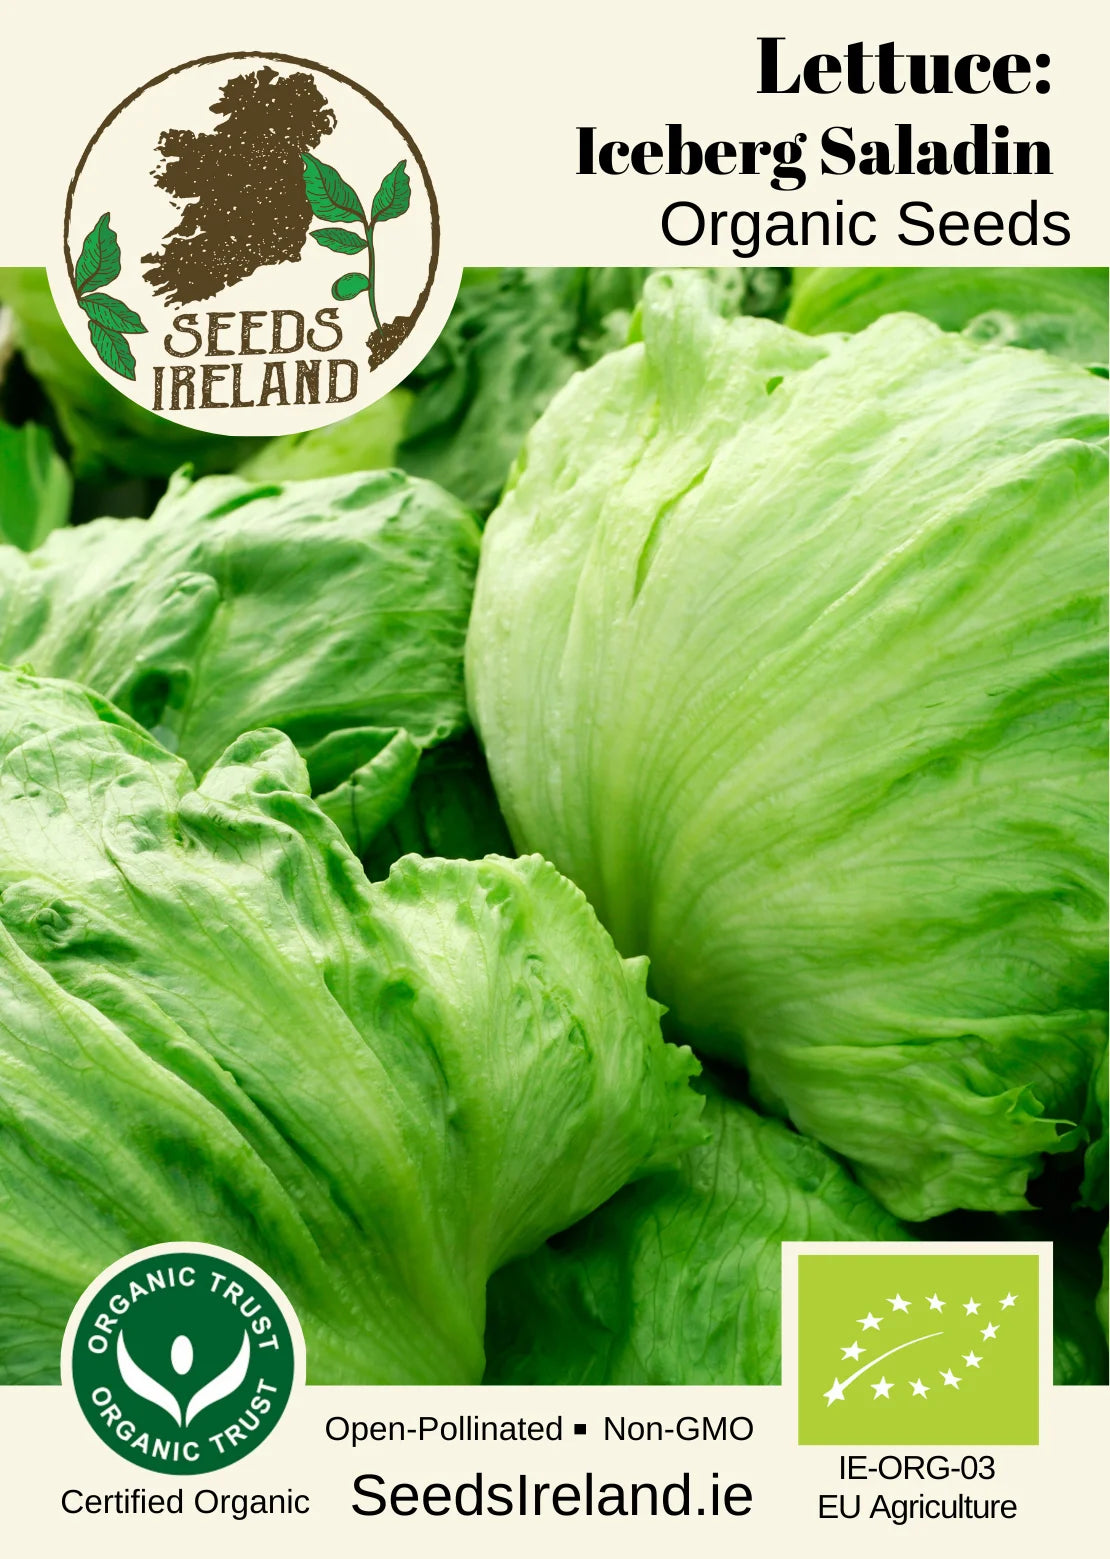 Lettuce: (Iceberg) Saladin Organic Seed